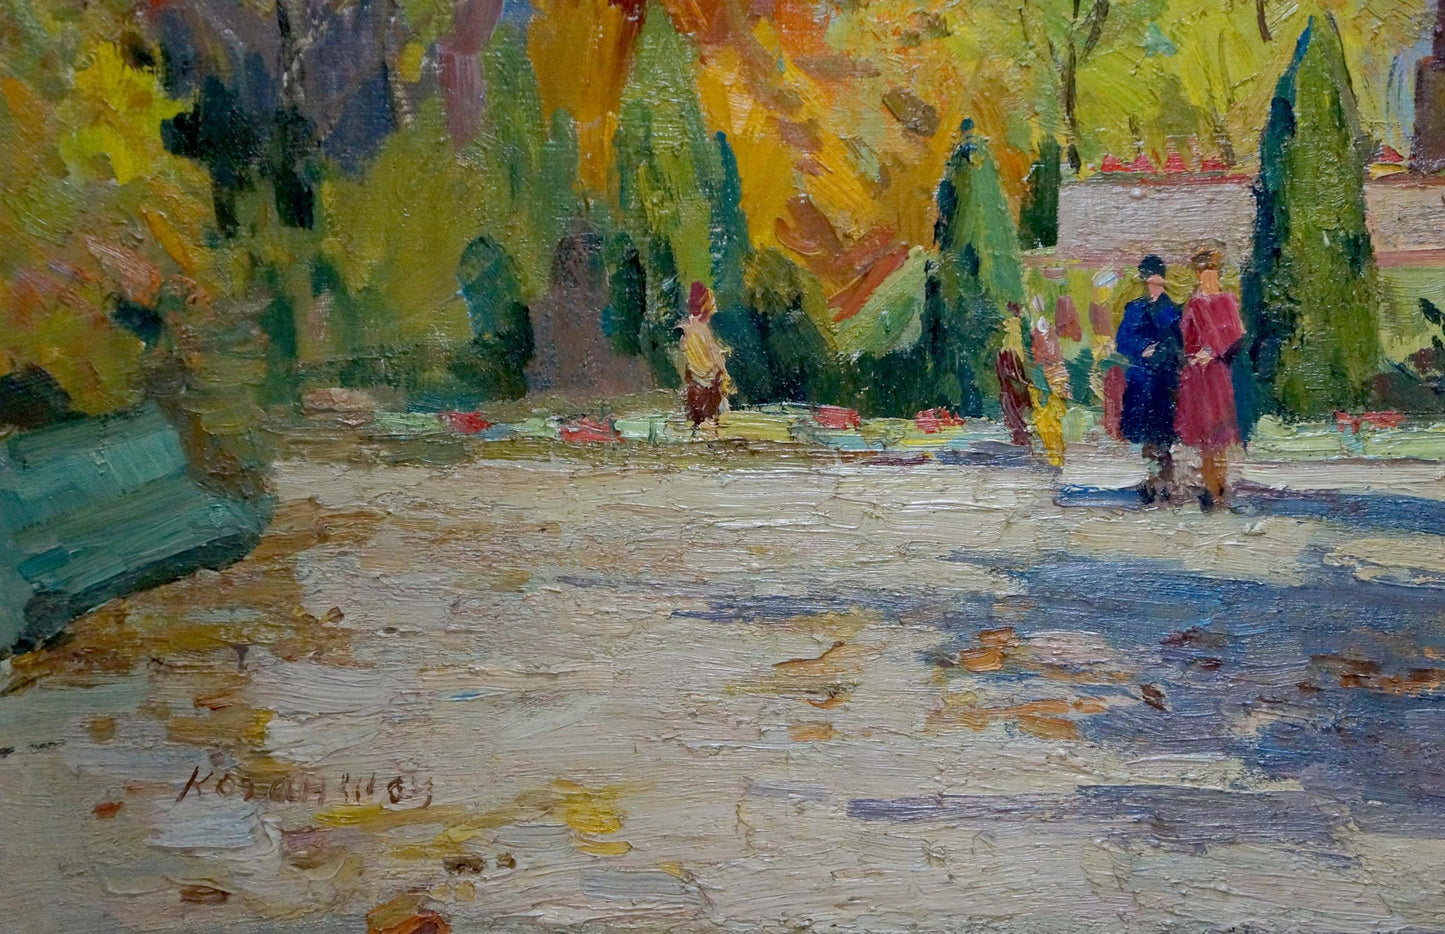 Matvey Borisovich Kogan-Shats depicted a park scene in oils